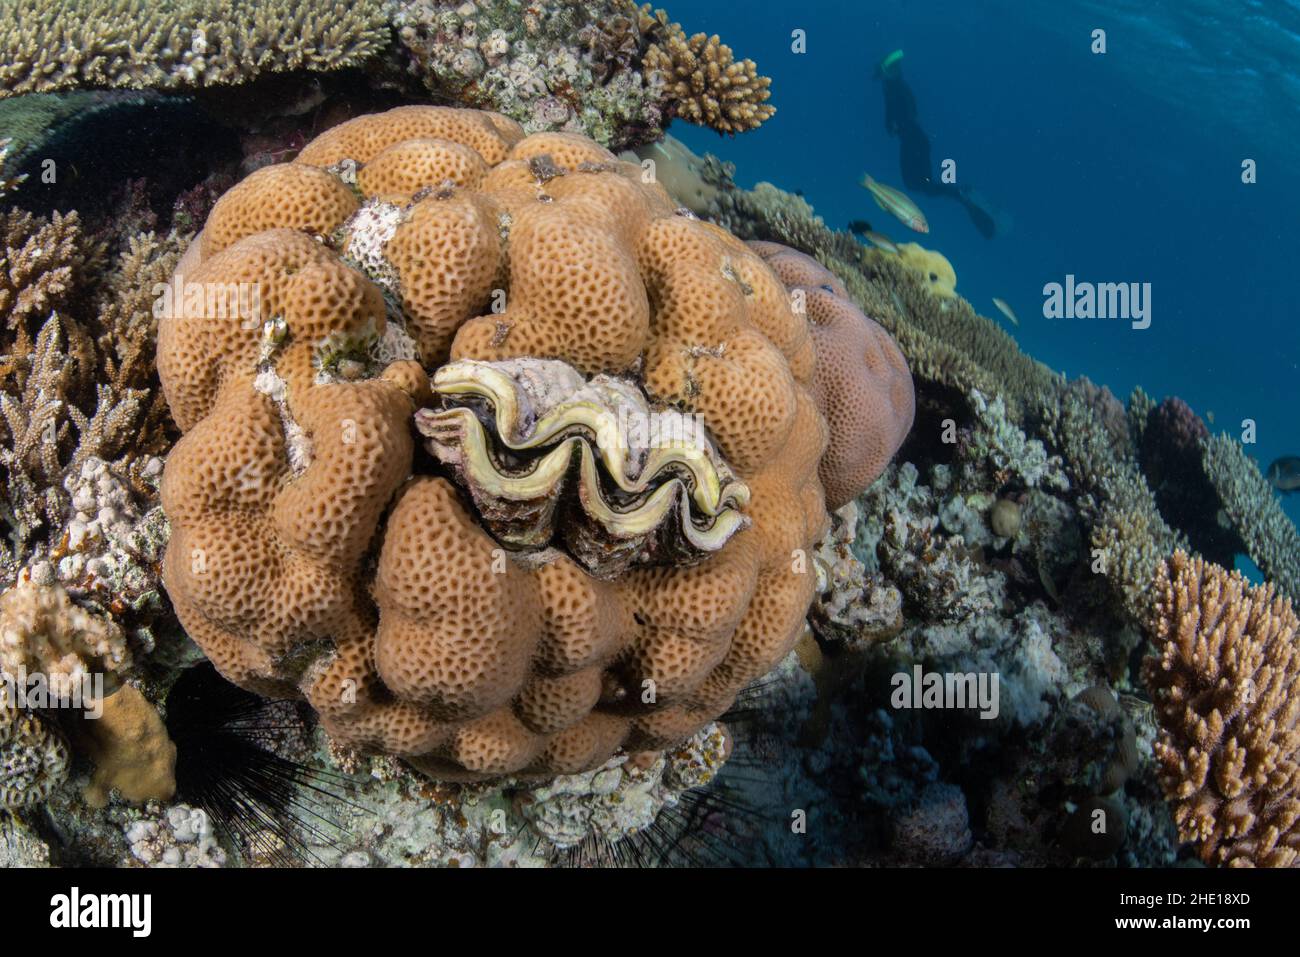 Eine riesige Muschel der Gattung Tridacna auf einem Korallenriff im Roten Meer Ägyptens. Stockfoto